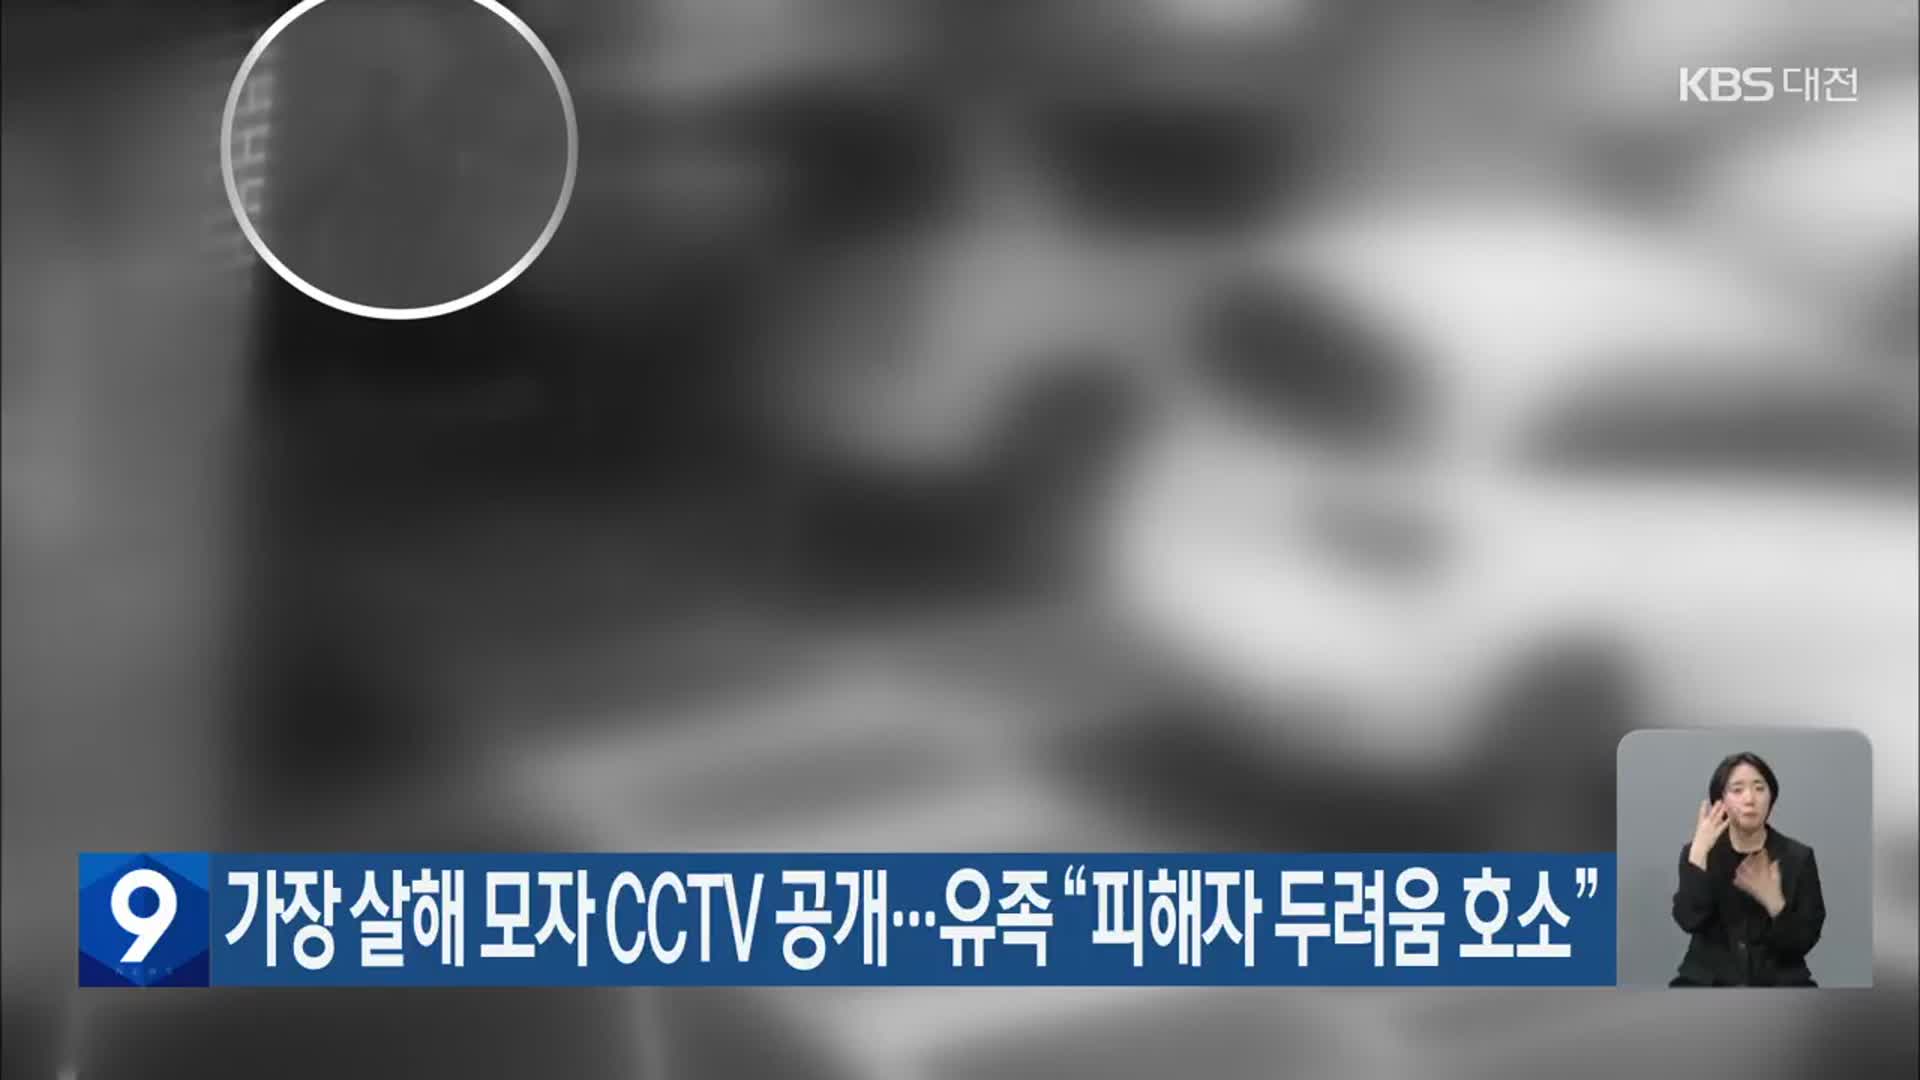 가장 살해 모자 CCTV 공개…유족 “피해자 두려움 호소”